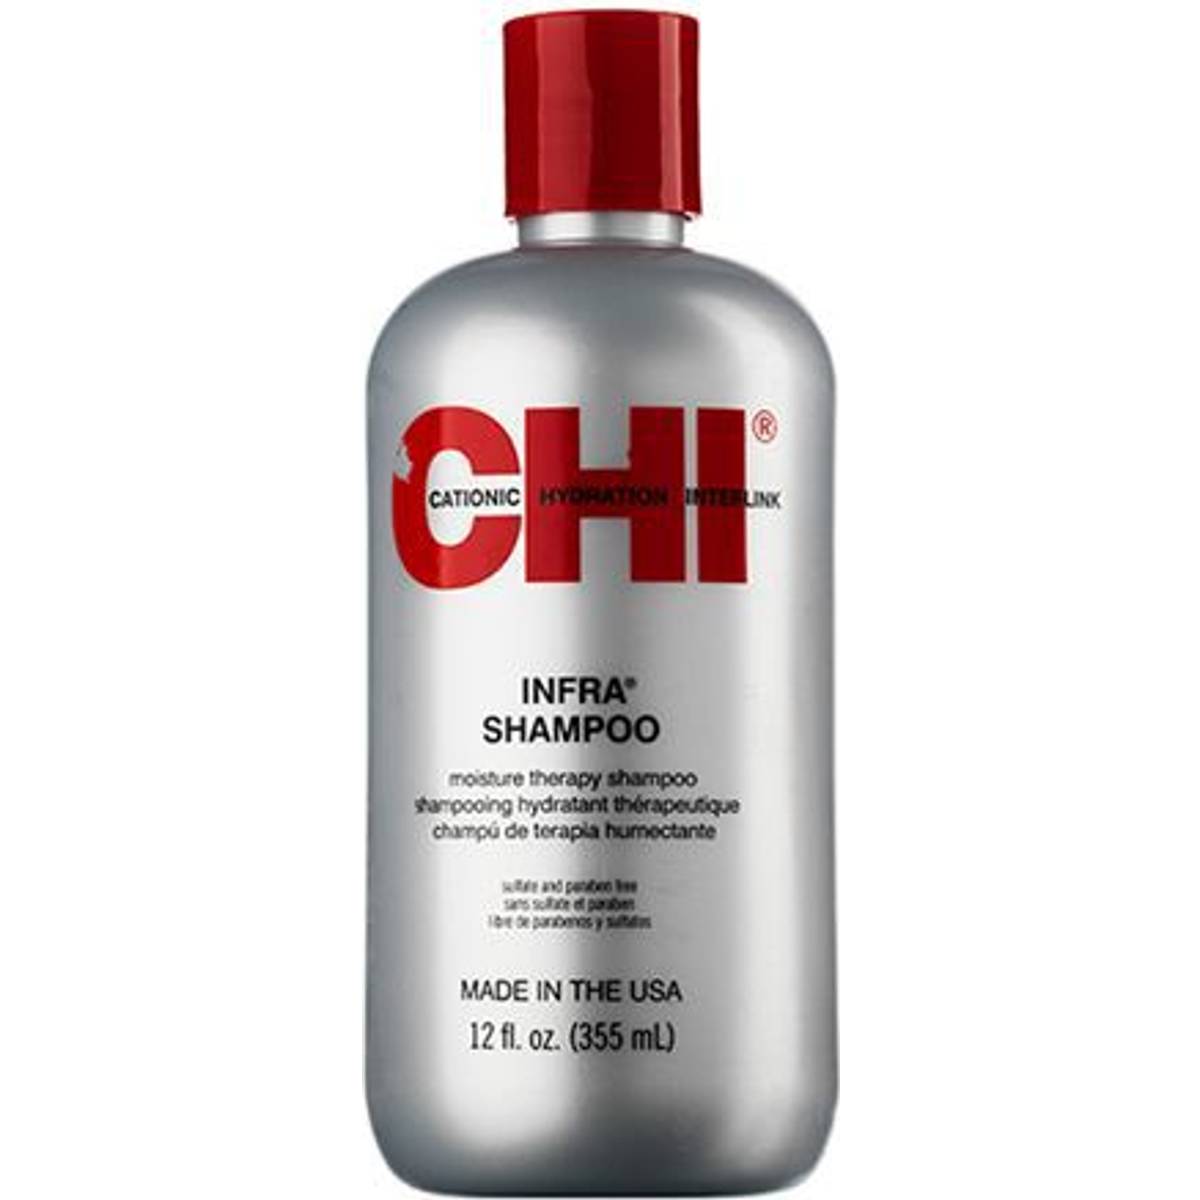 CHI Shampoo (29 produkter) hos PriceRunner • Se billigste pris nu »